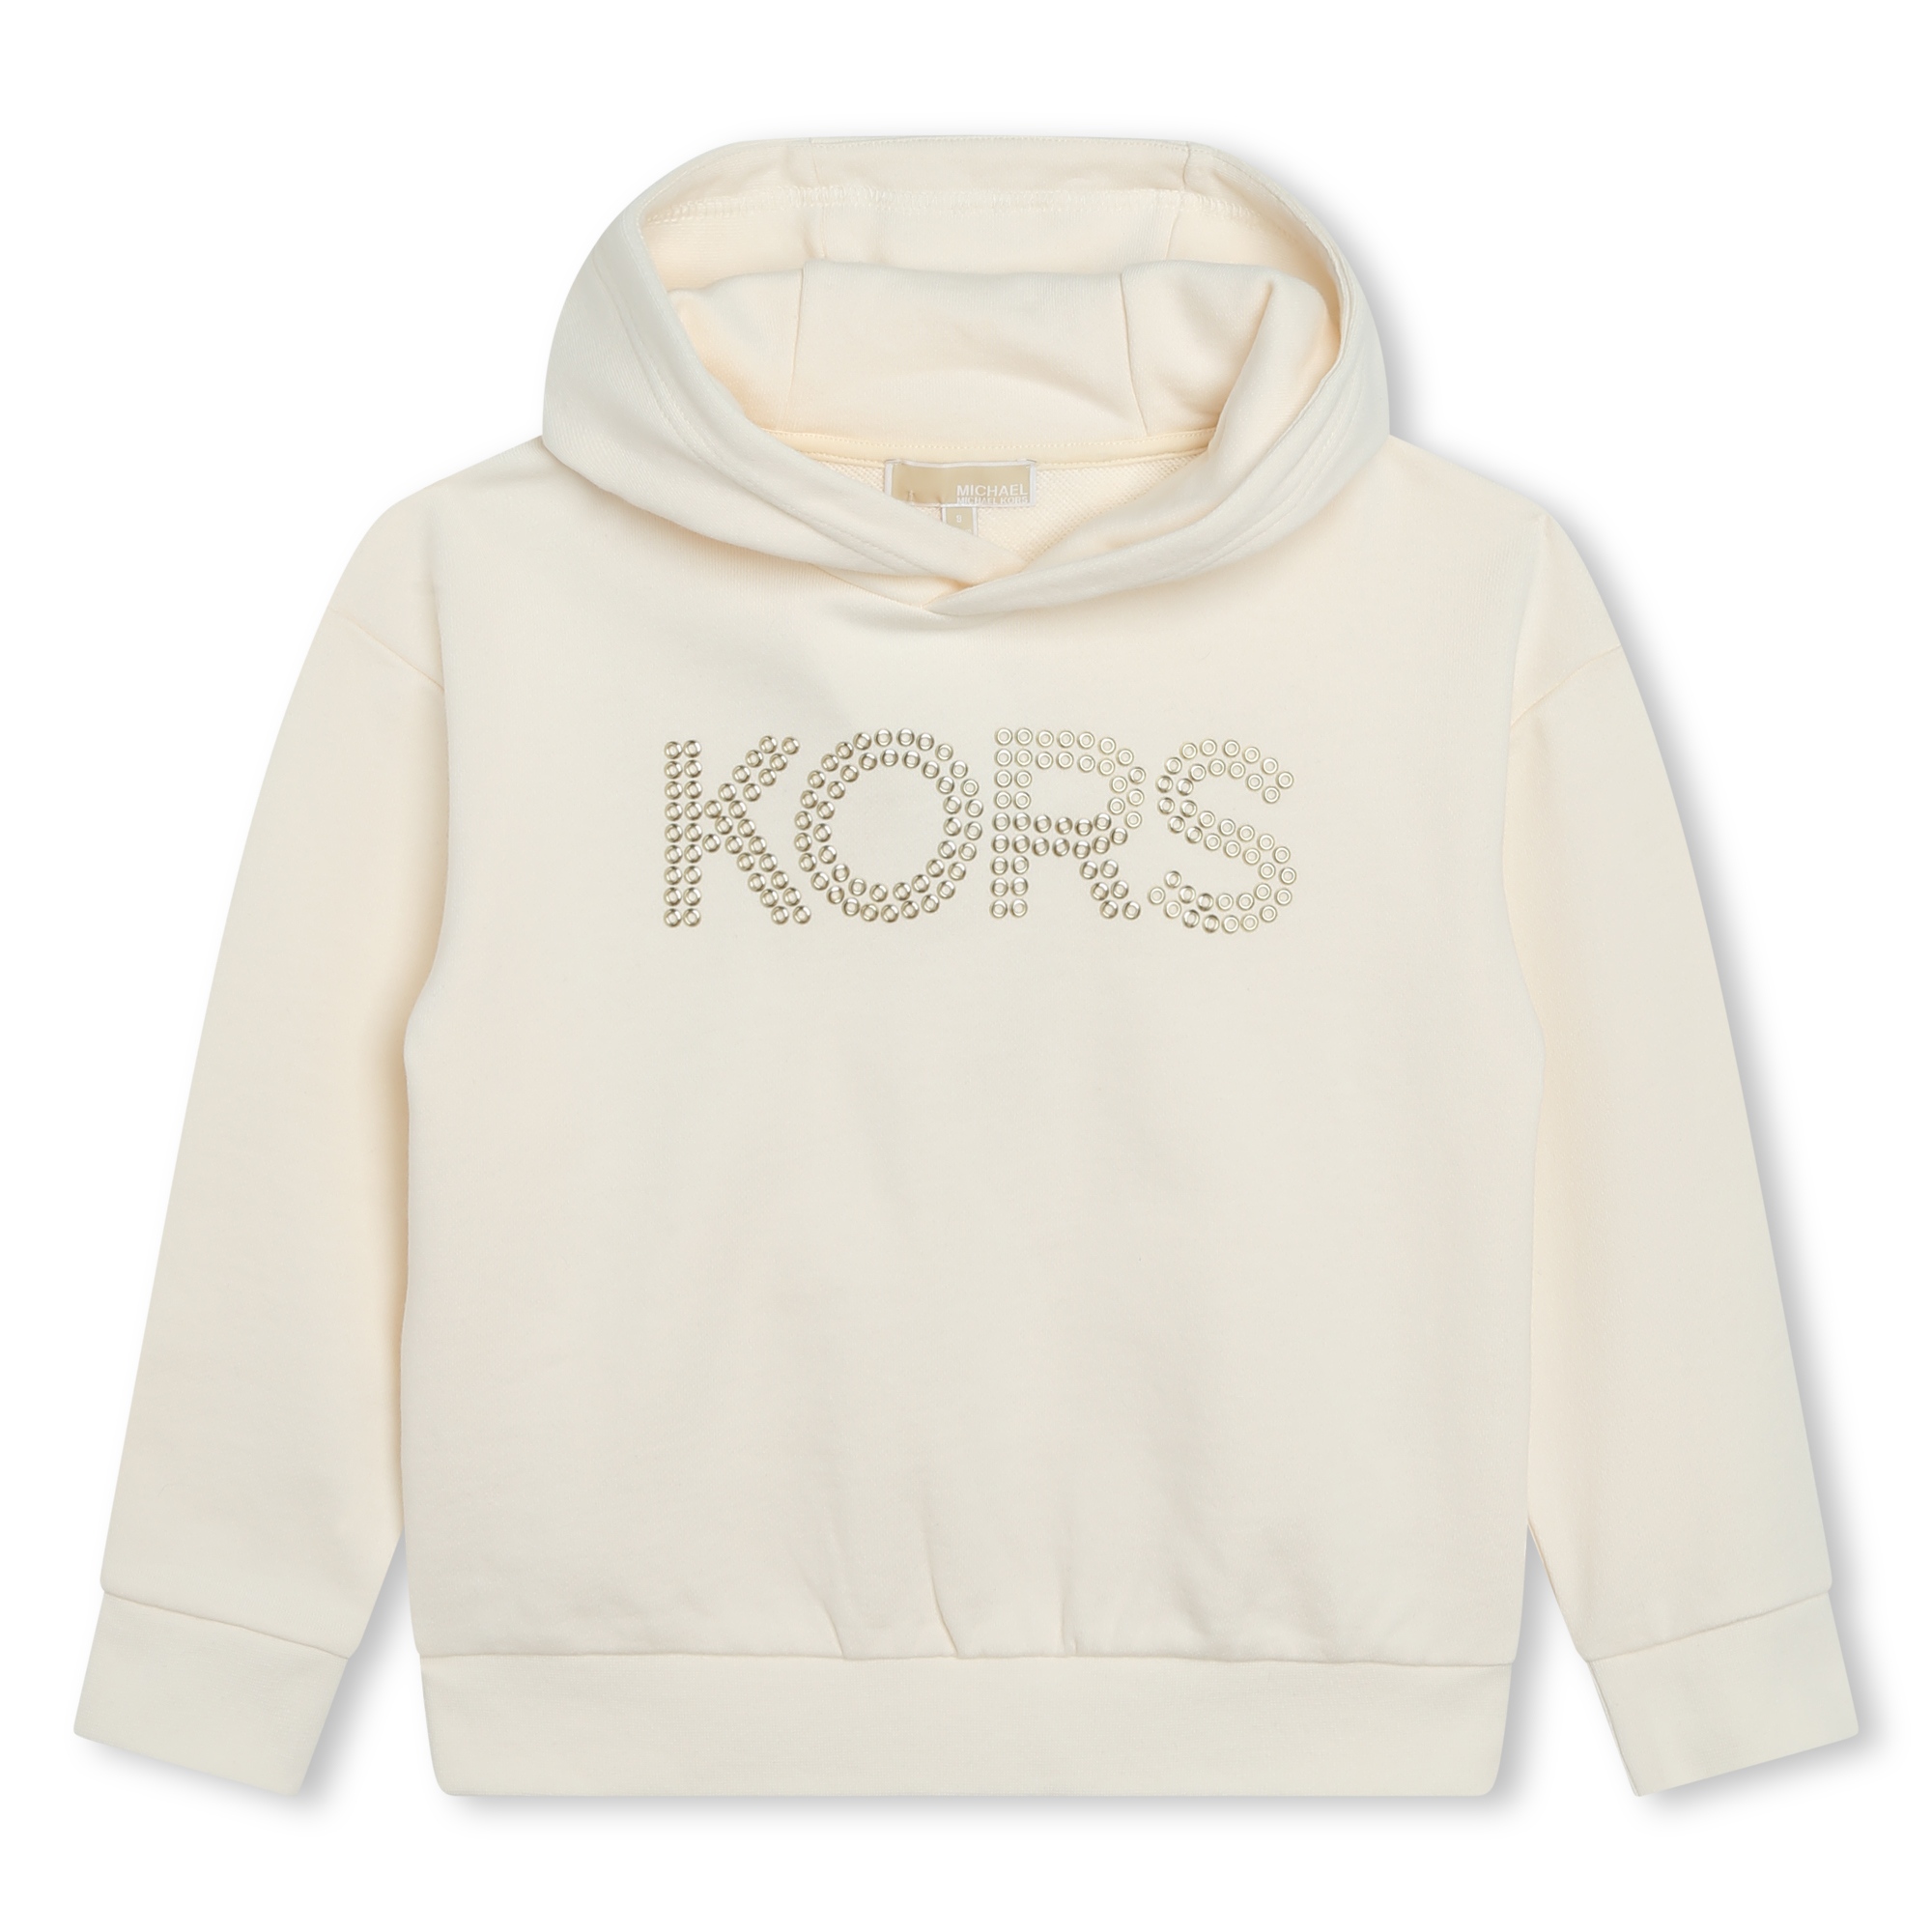 Hooded fleece sweatshirt MICHAEL KORS for GIRL